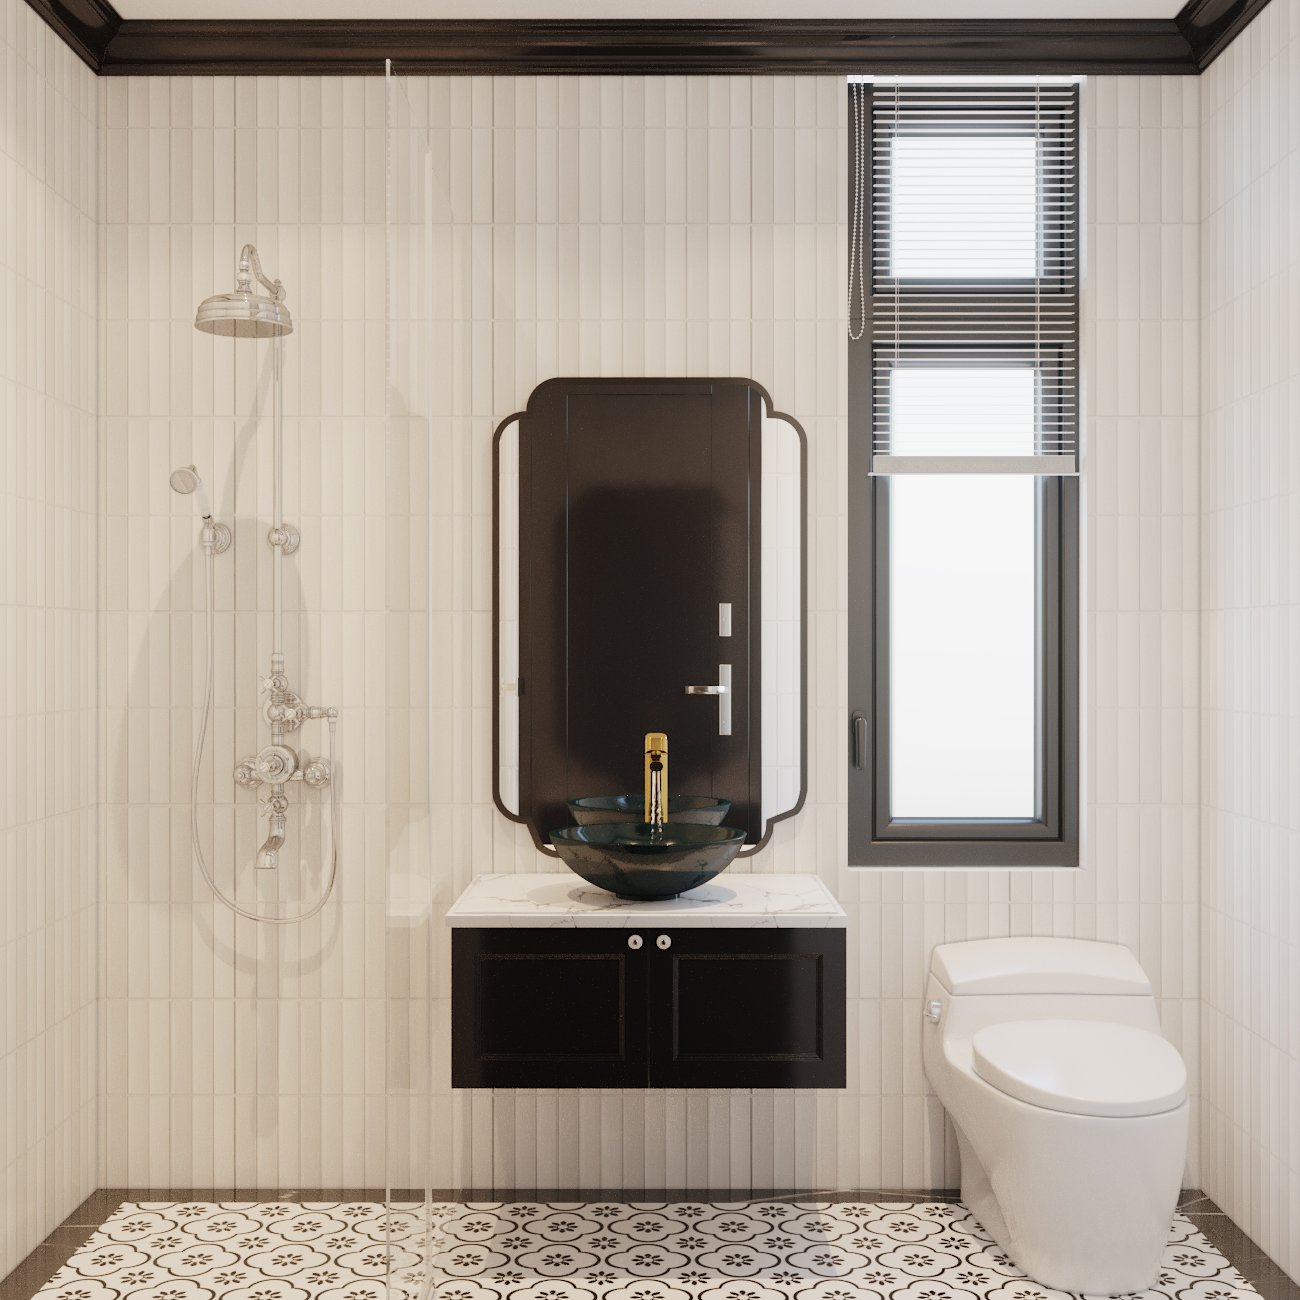 Nội thất phòng tắm cũng được lựa chọn tinh tế với bồn rửa màu đen huyền bí, nổi bật trên phông nền màu sáng trung tính chủ đạo.